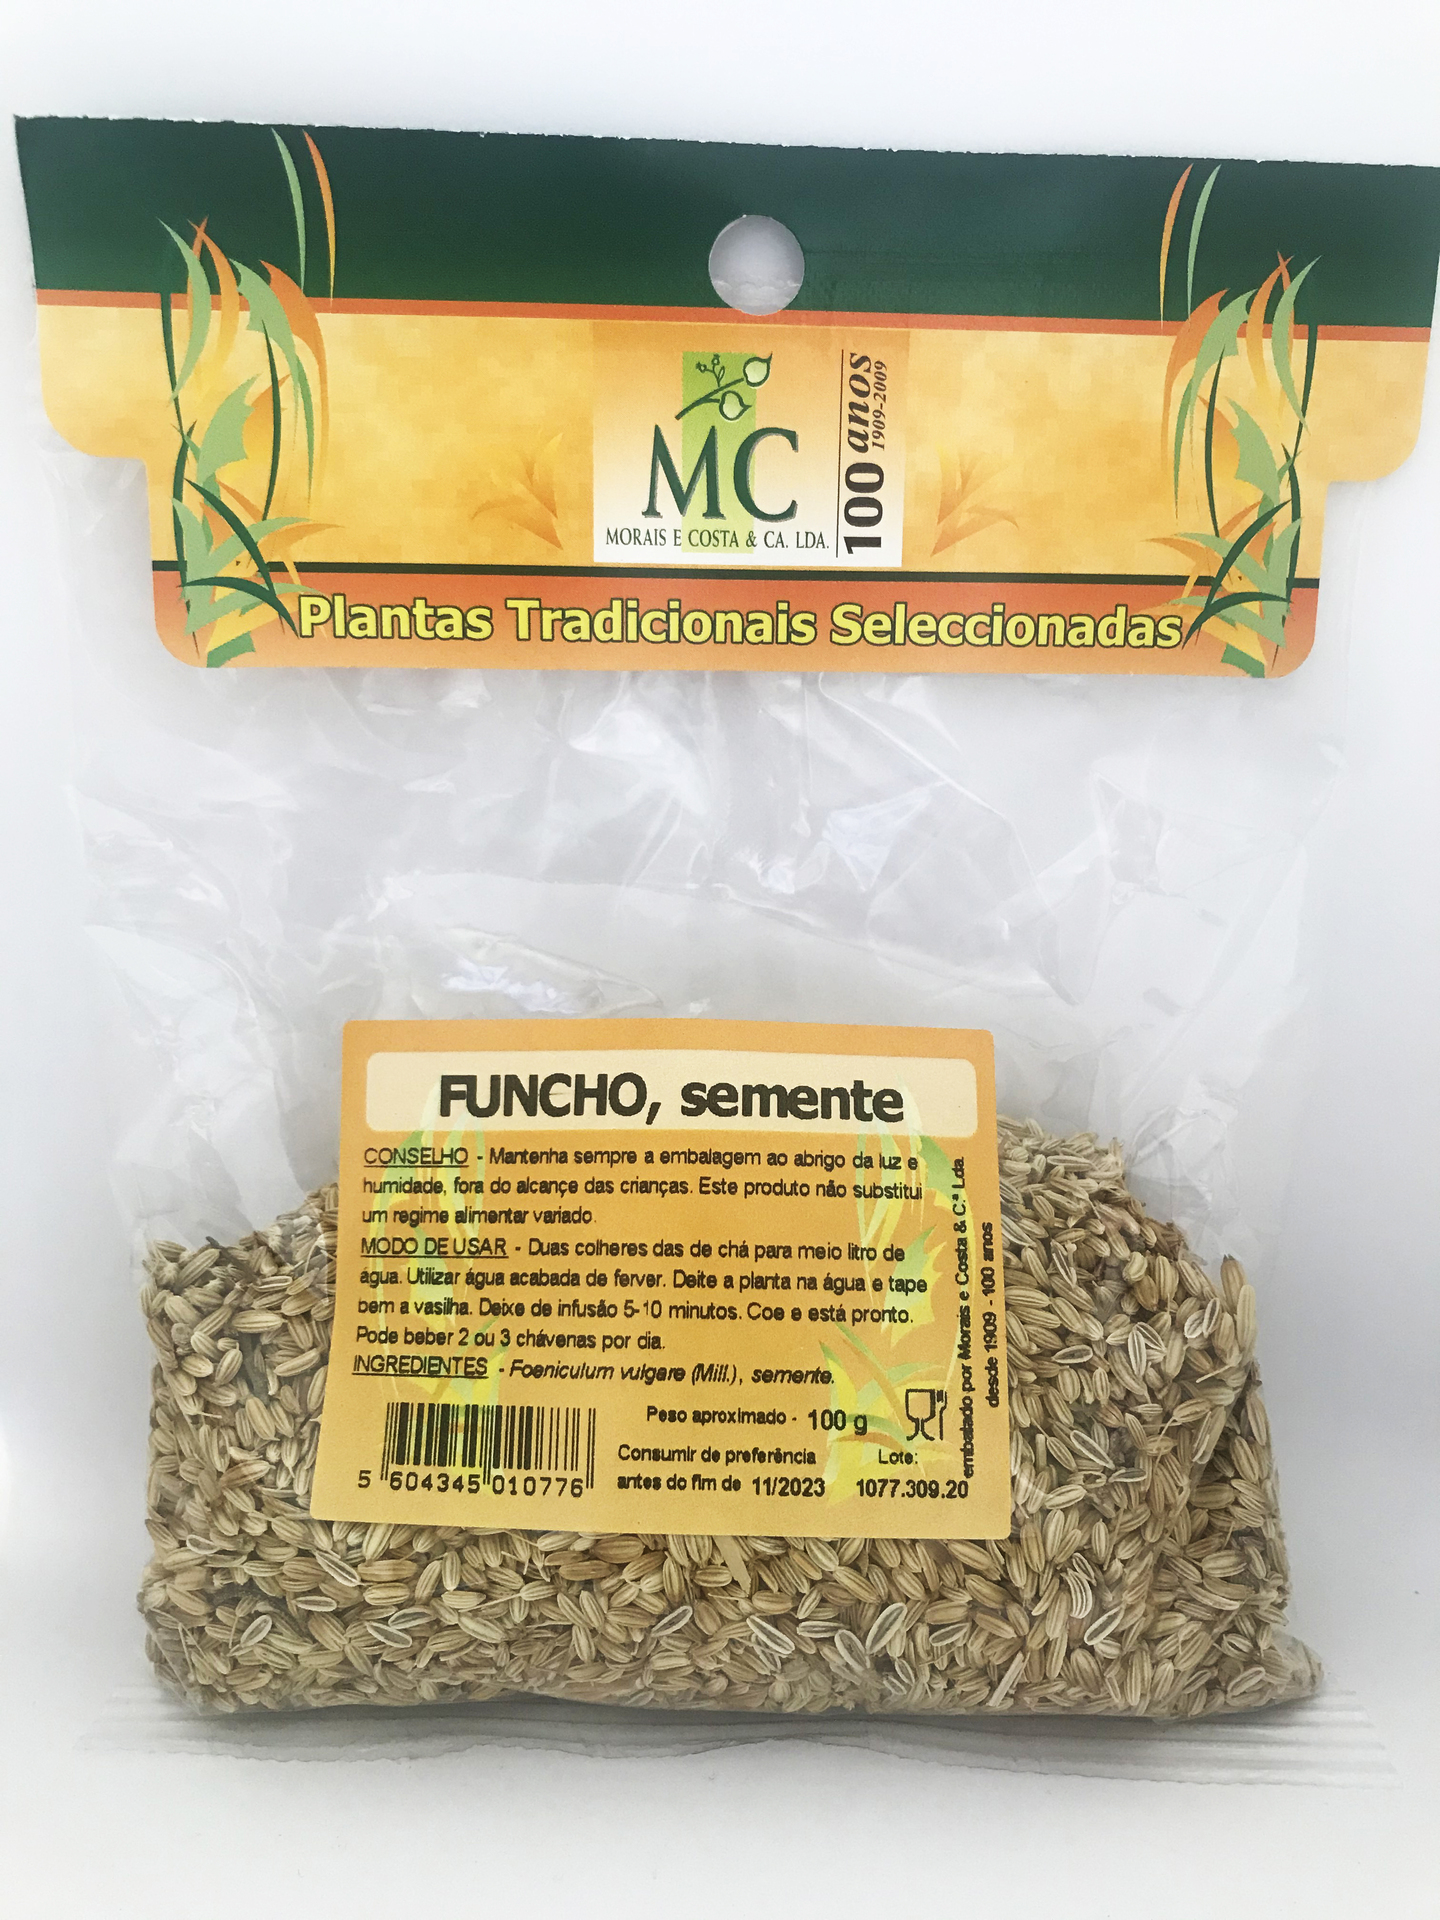 Funcho, semente